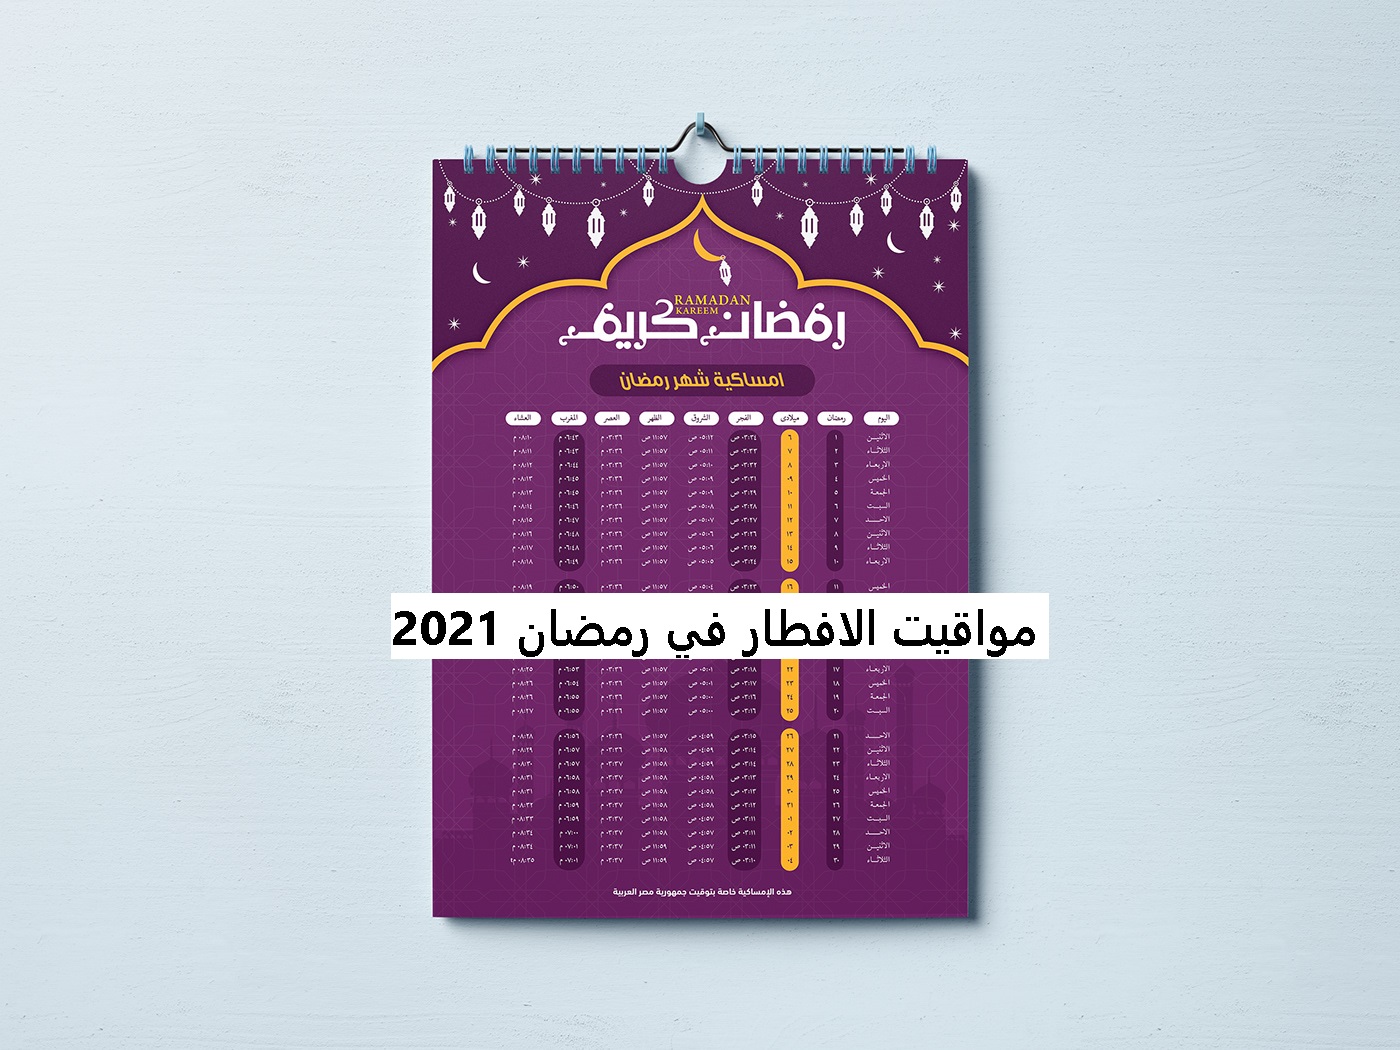 مواقيت الافطار في رمضان 2021 في مصر والسعودية والجزائر وفرنسا وعدد ساعات الصوم